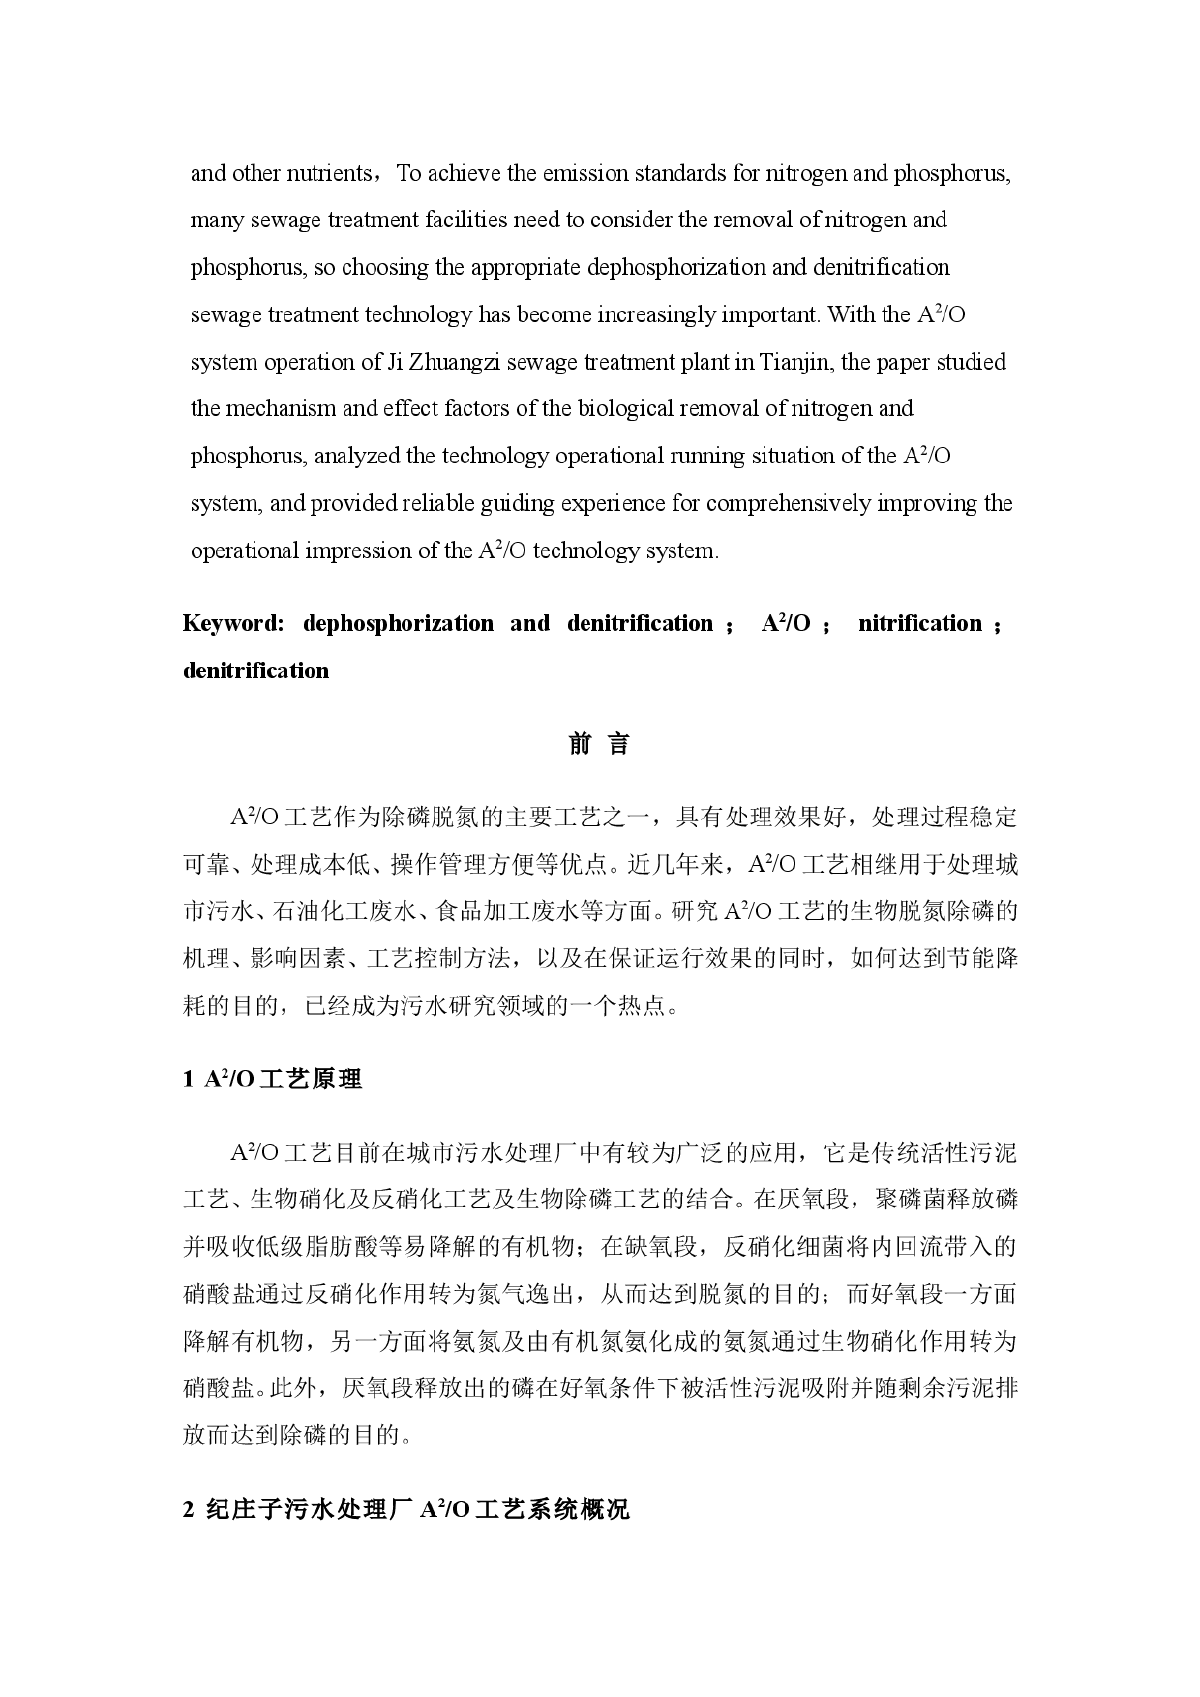 浅谈纪庄子污水处理厂A2/O工艺运行经验-图二